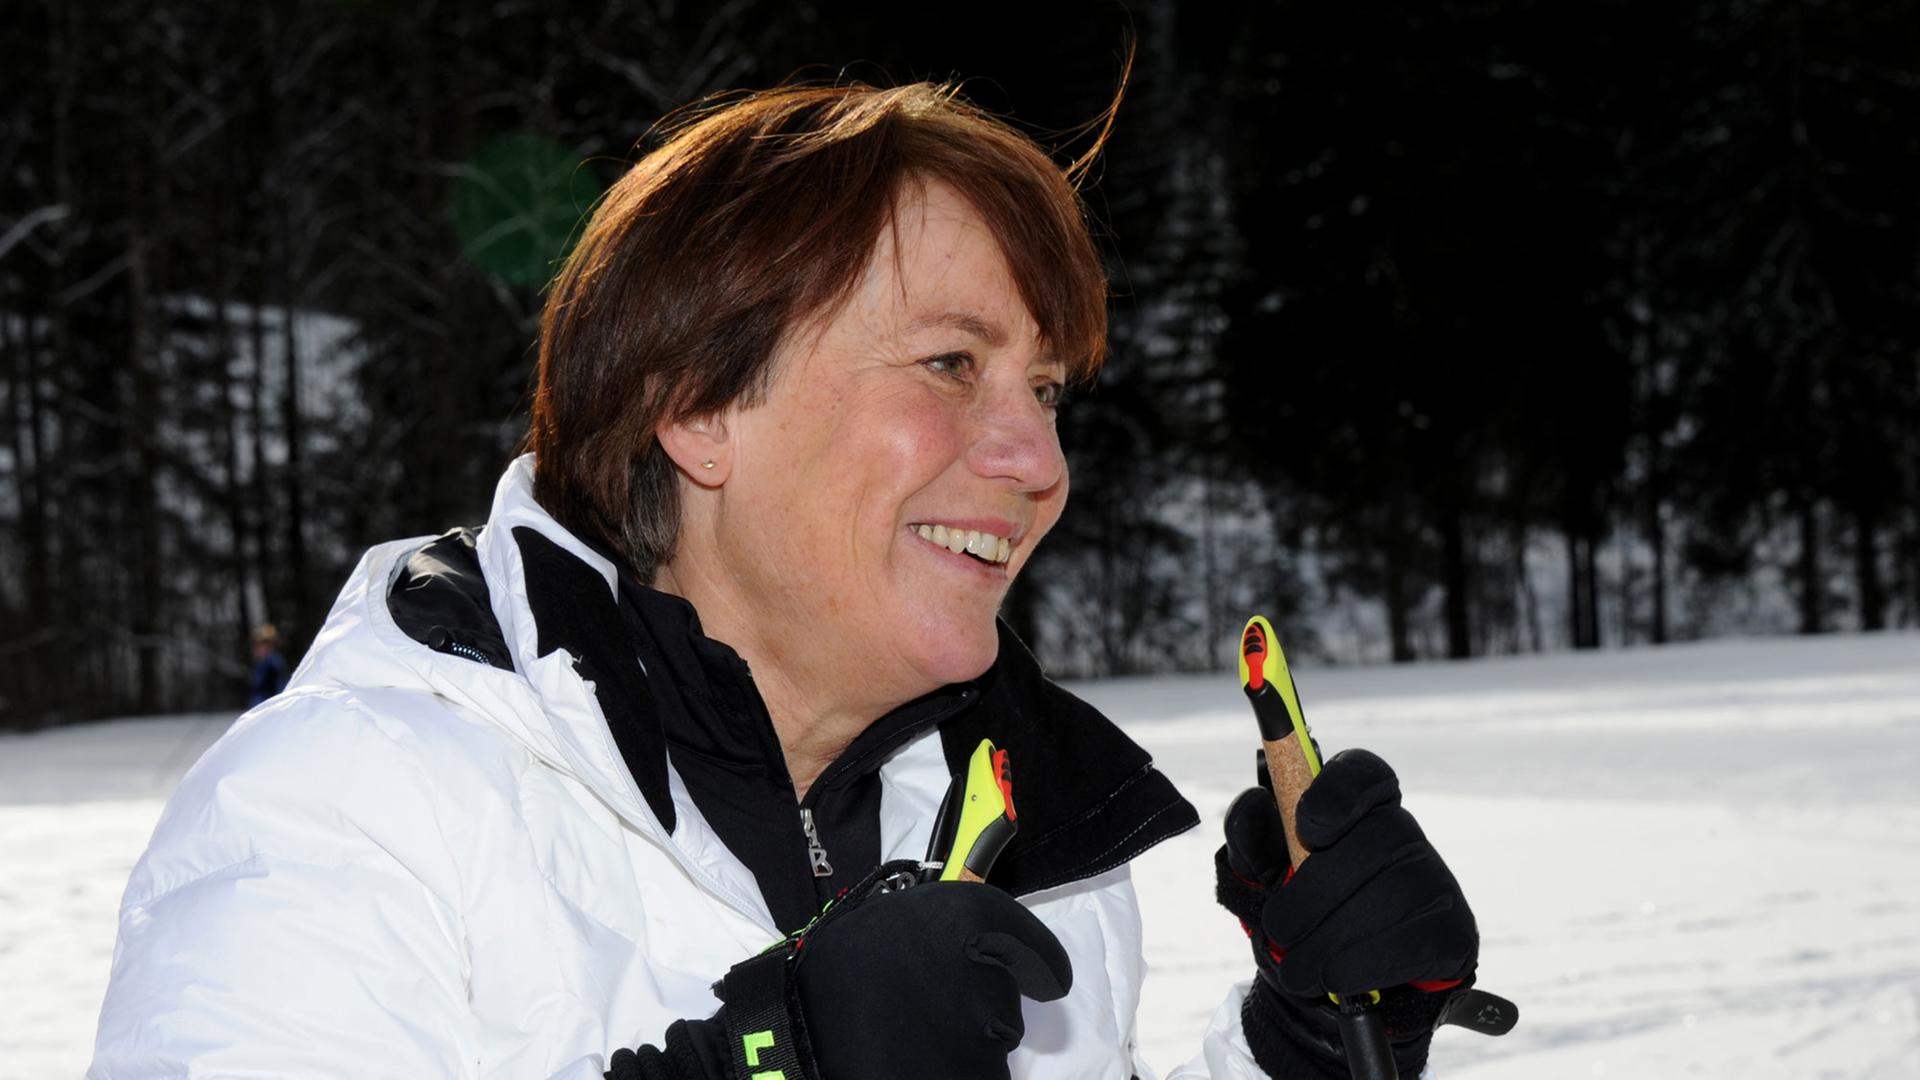 Die ehemalige deutsche Skirennläuferin Rosi Mittermaier lächelt am 30.01.2014 bei einem Fototermin zur ARD Sendung "Star Biathlon 2014" auf dem Trainingsgelände Kaltenbrunn bei Garmisch-Partenkirchen (Bayern).